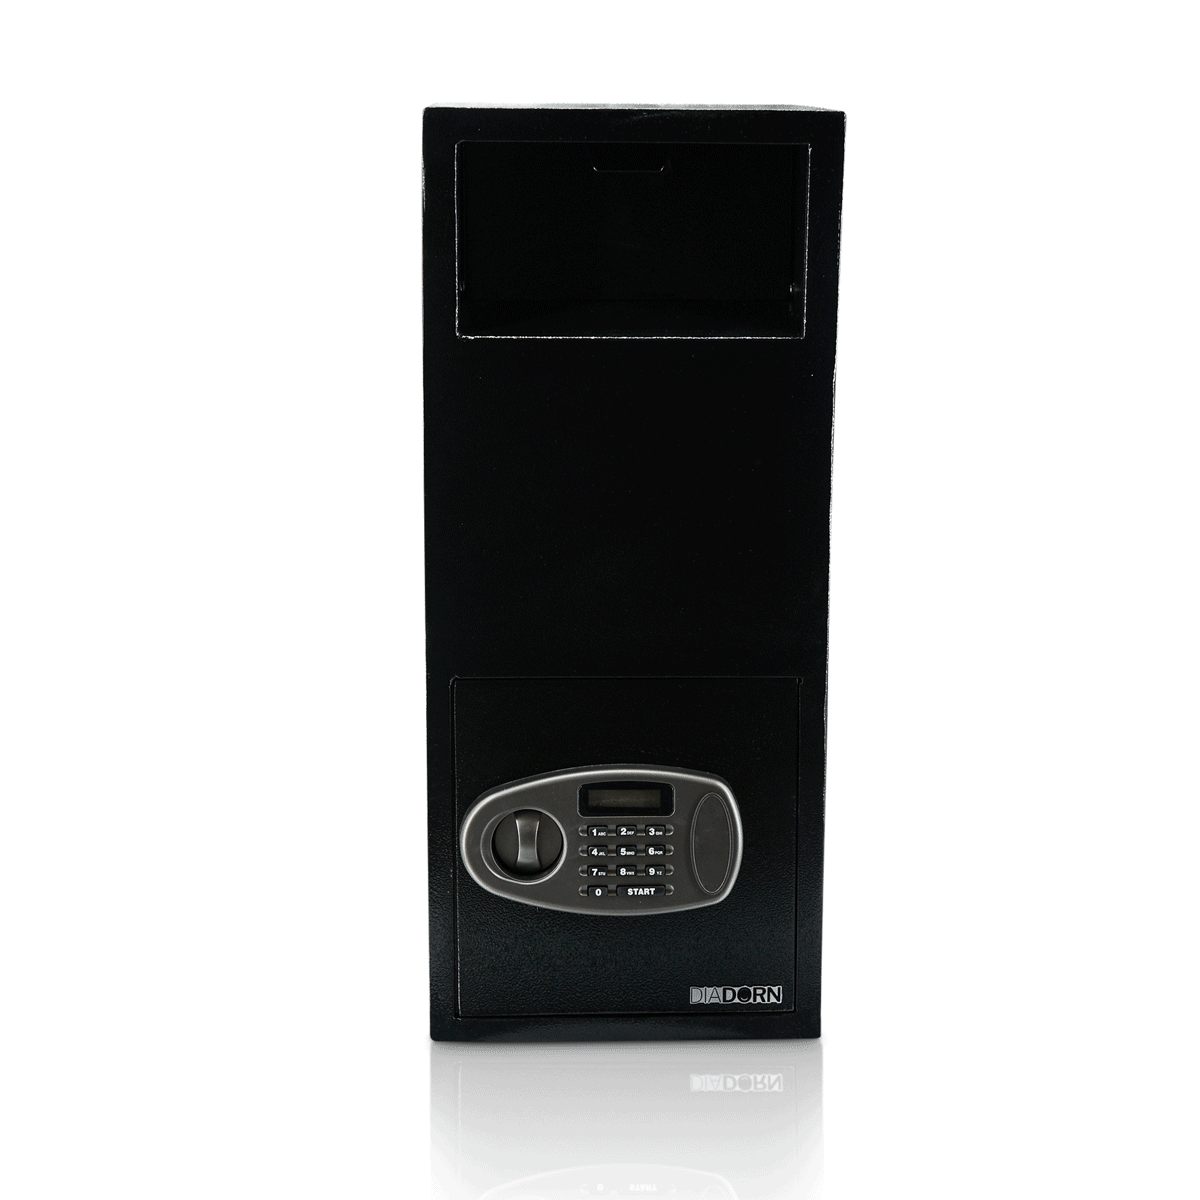 Cassetta di Sicurezza con Scomparto di Deposito | Extra Alta - 850 mm | Livello di Sicurezza A | Panetteria | Veicolo di Consegna